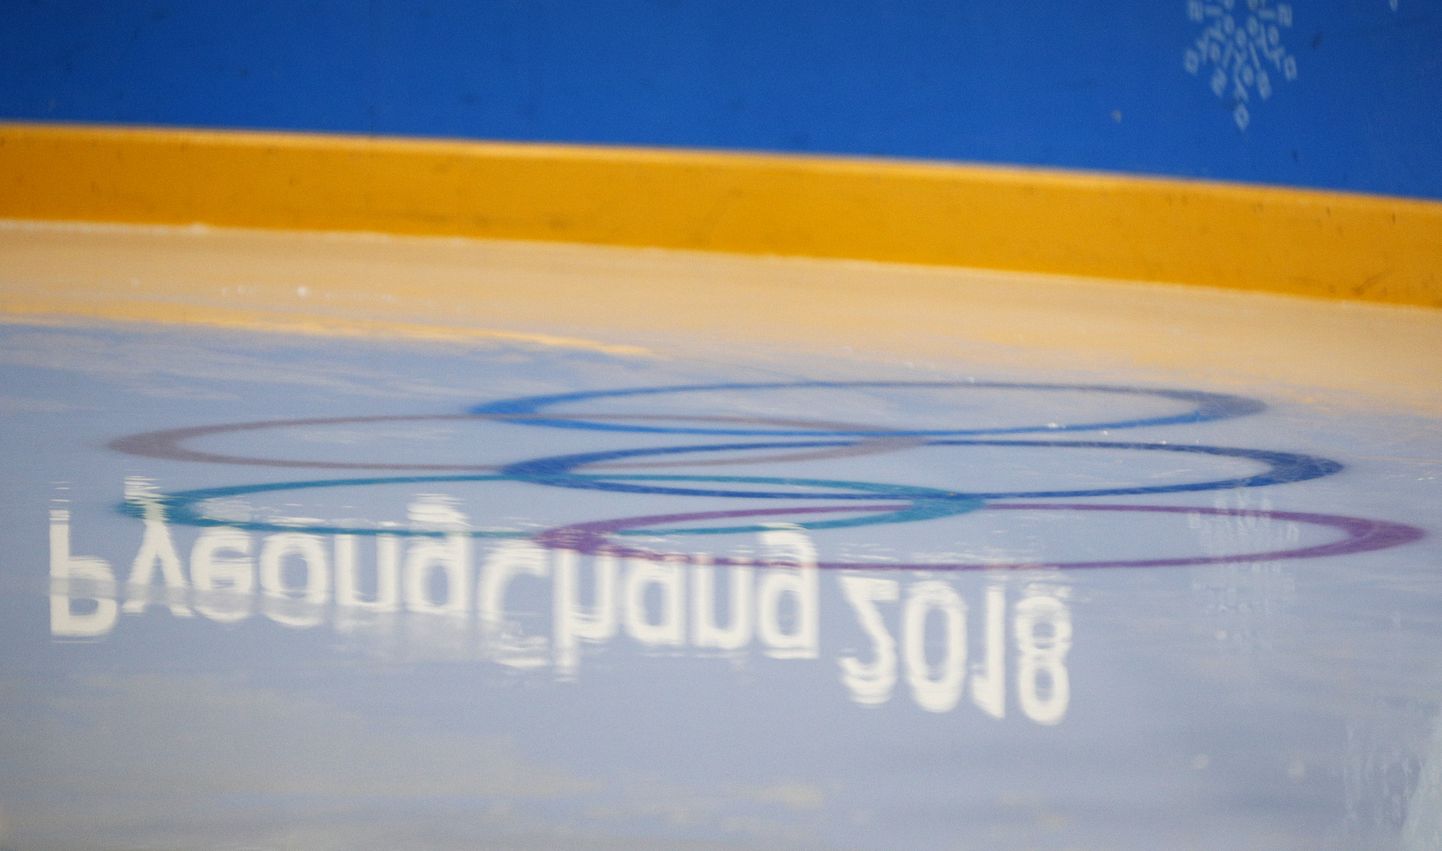 Pyeongchangi olümpia.